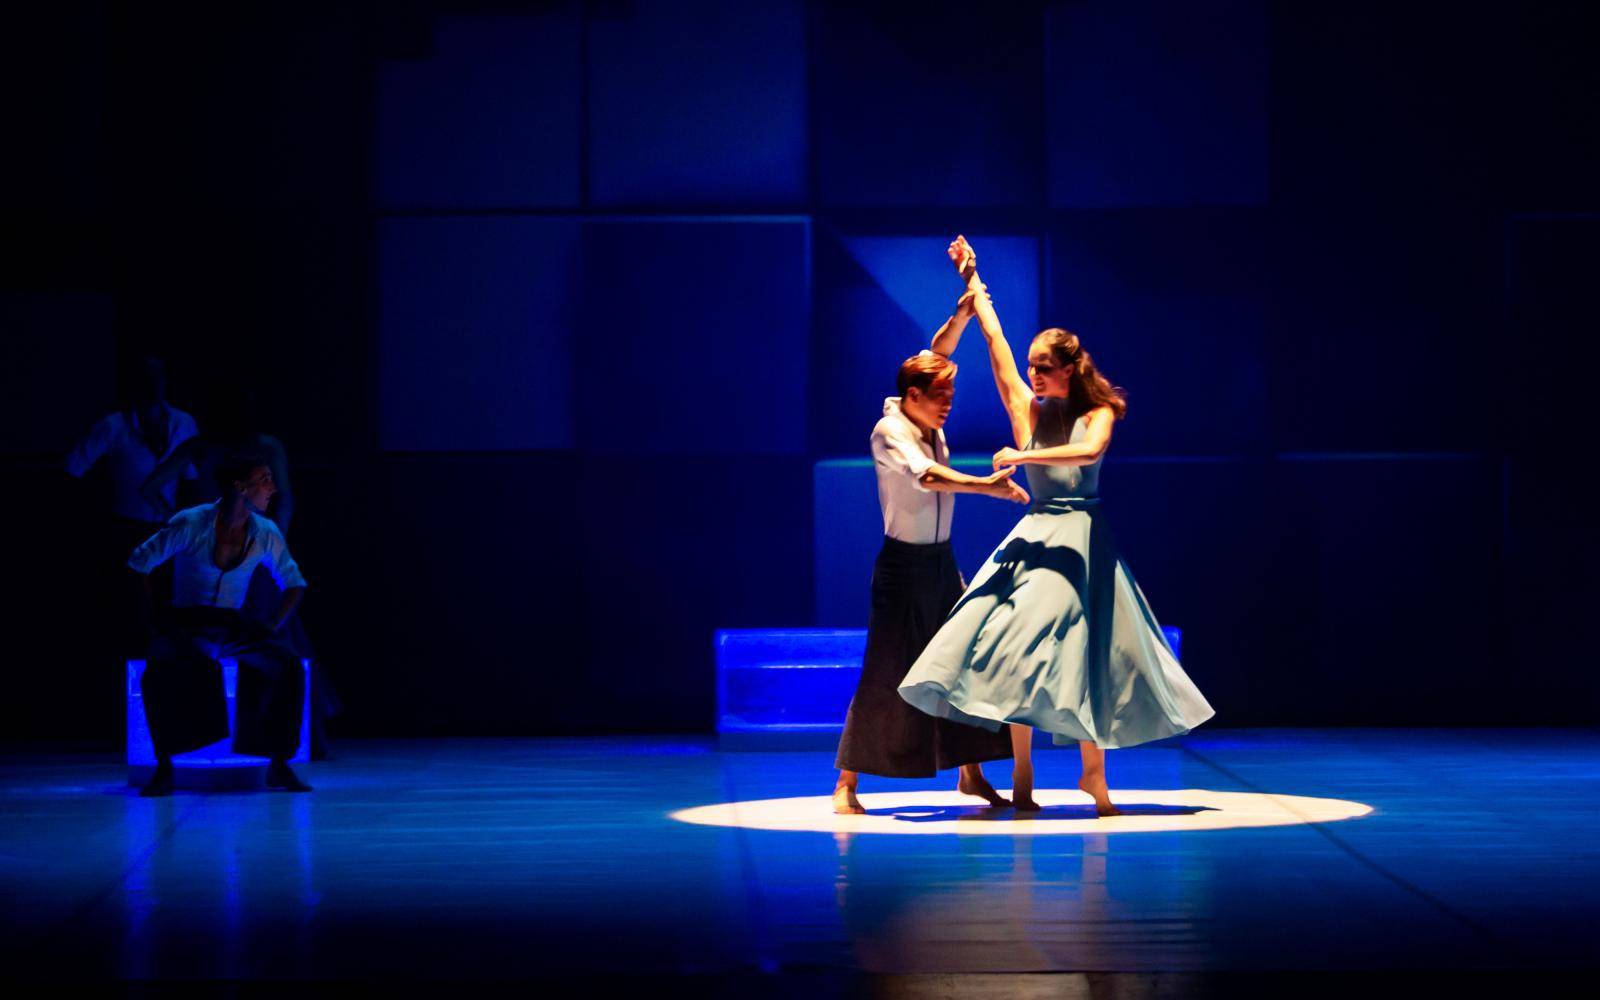 Split: Baletna predstava Daniela Cardosa "Correr o fado”